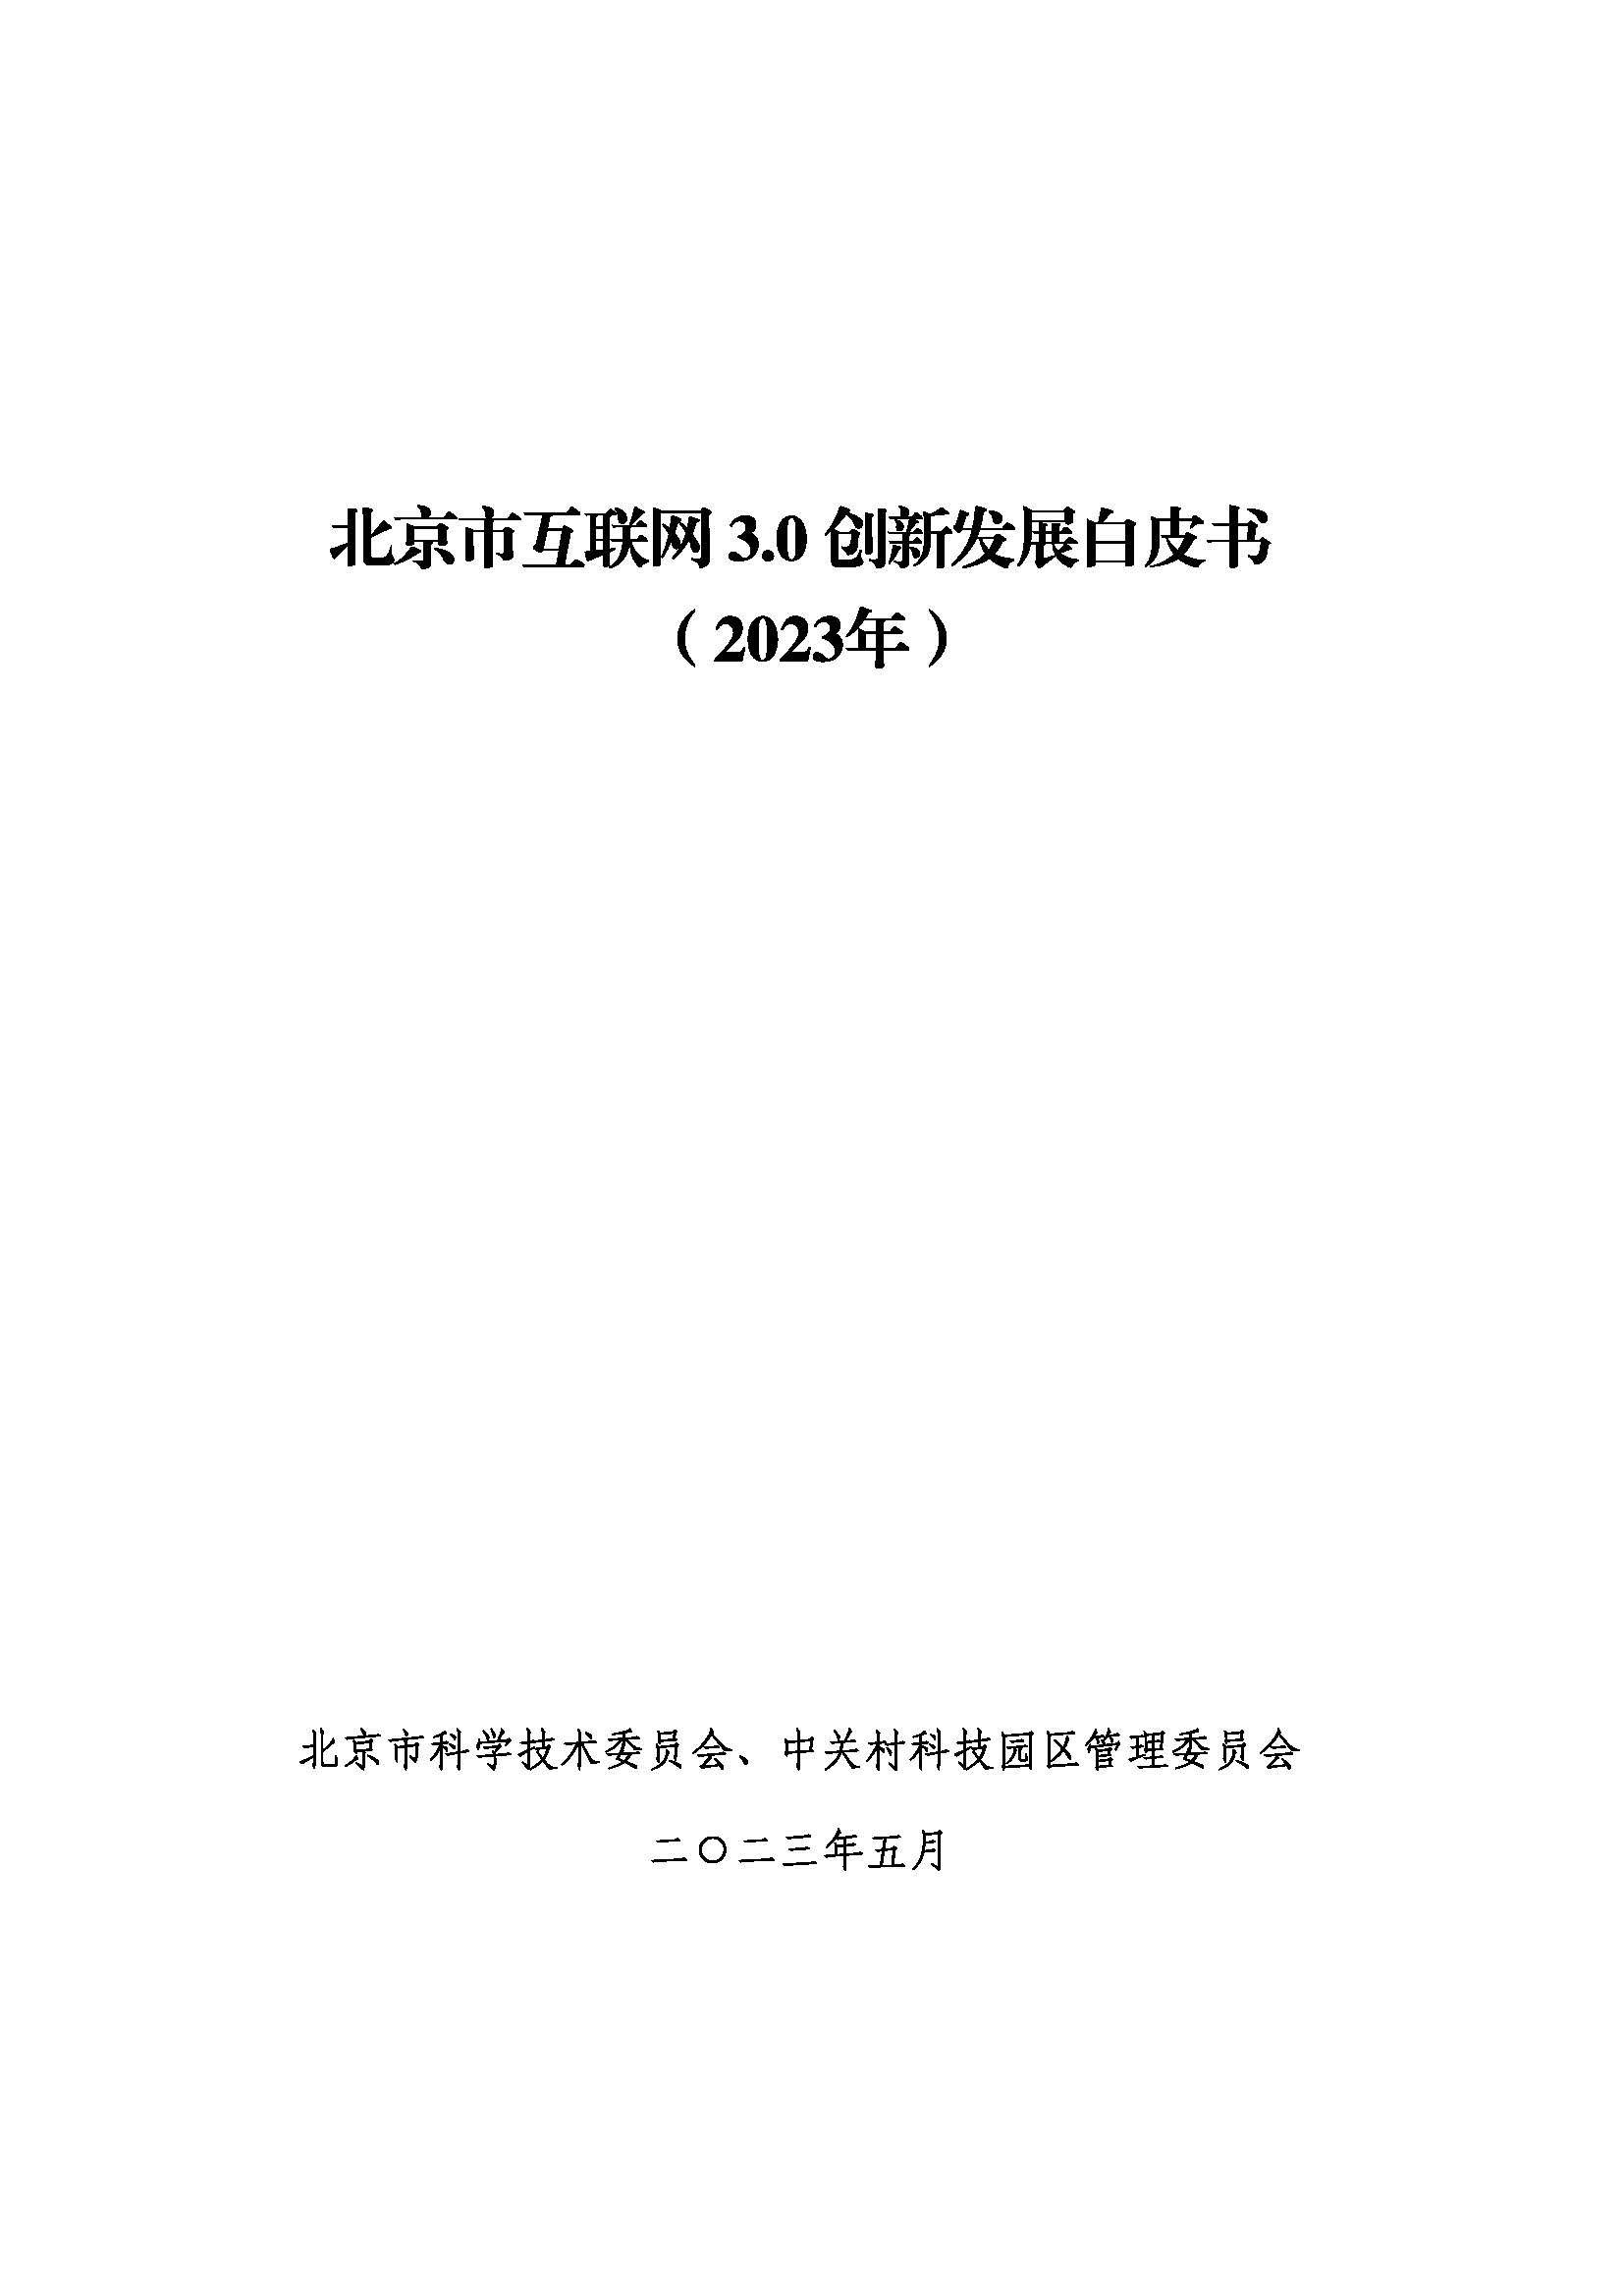 报告｜北京市互联网3.0创新发展白皮书（2023年）